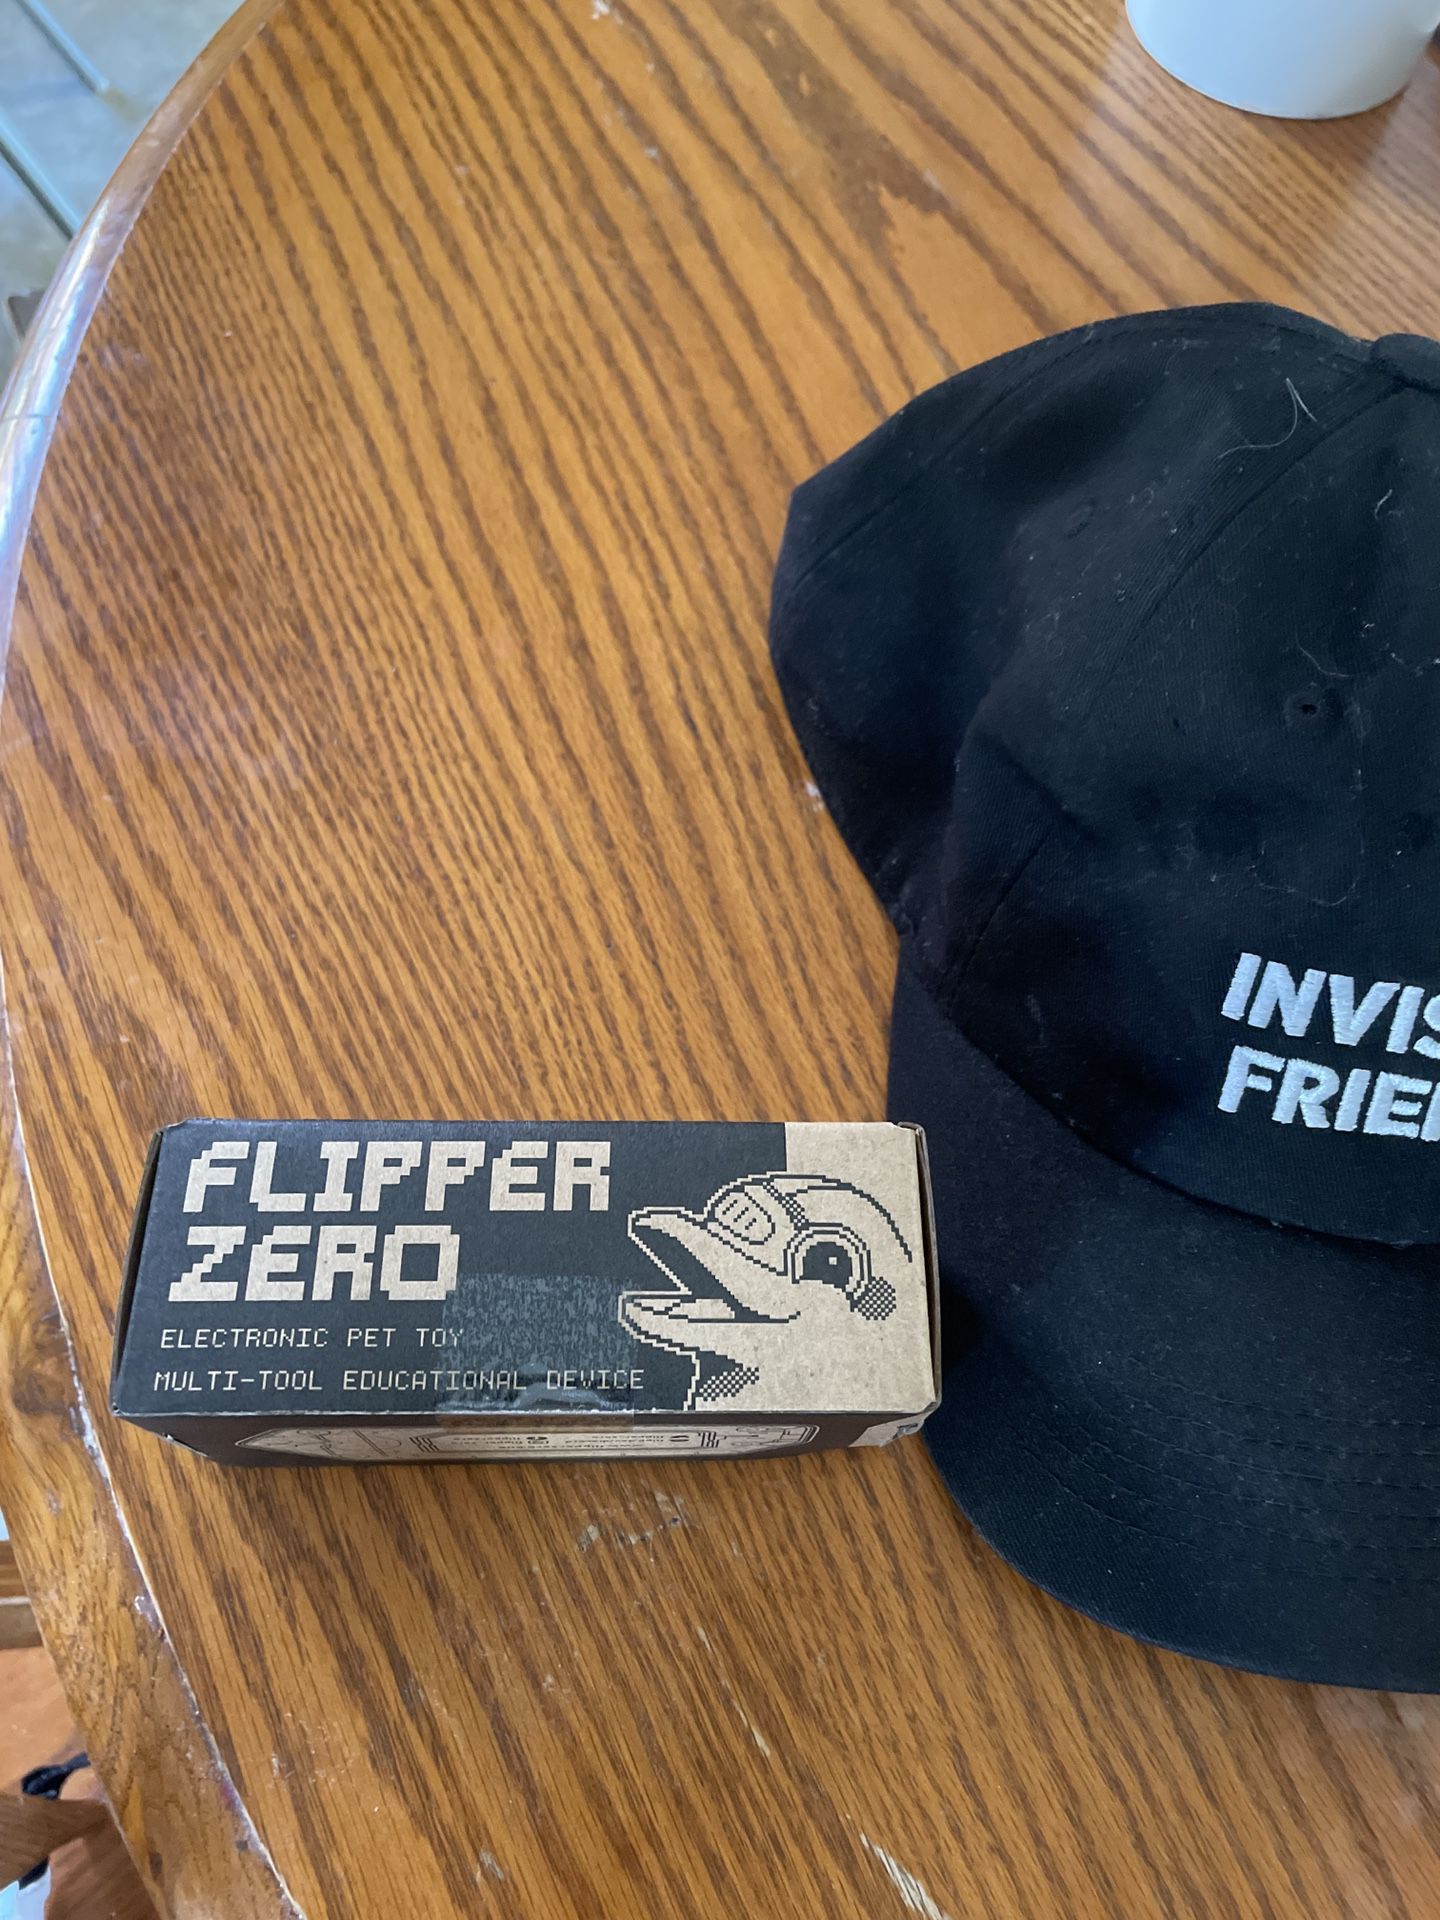 Flipper Zero Brand New Sealed